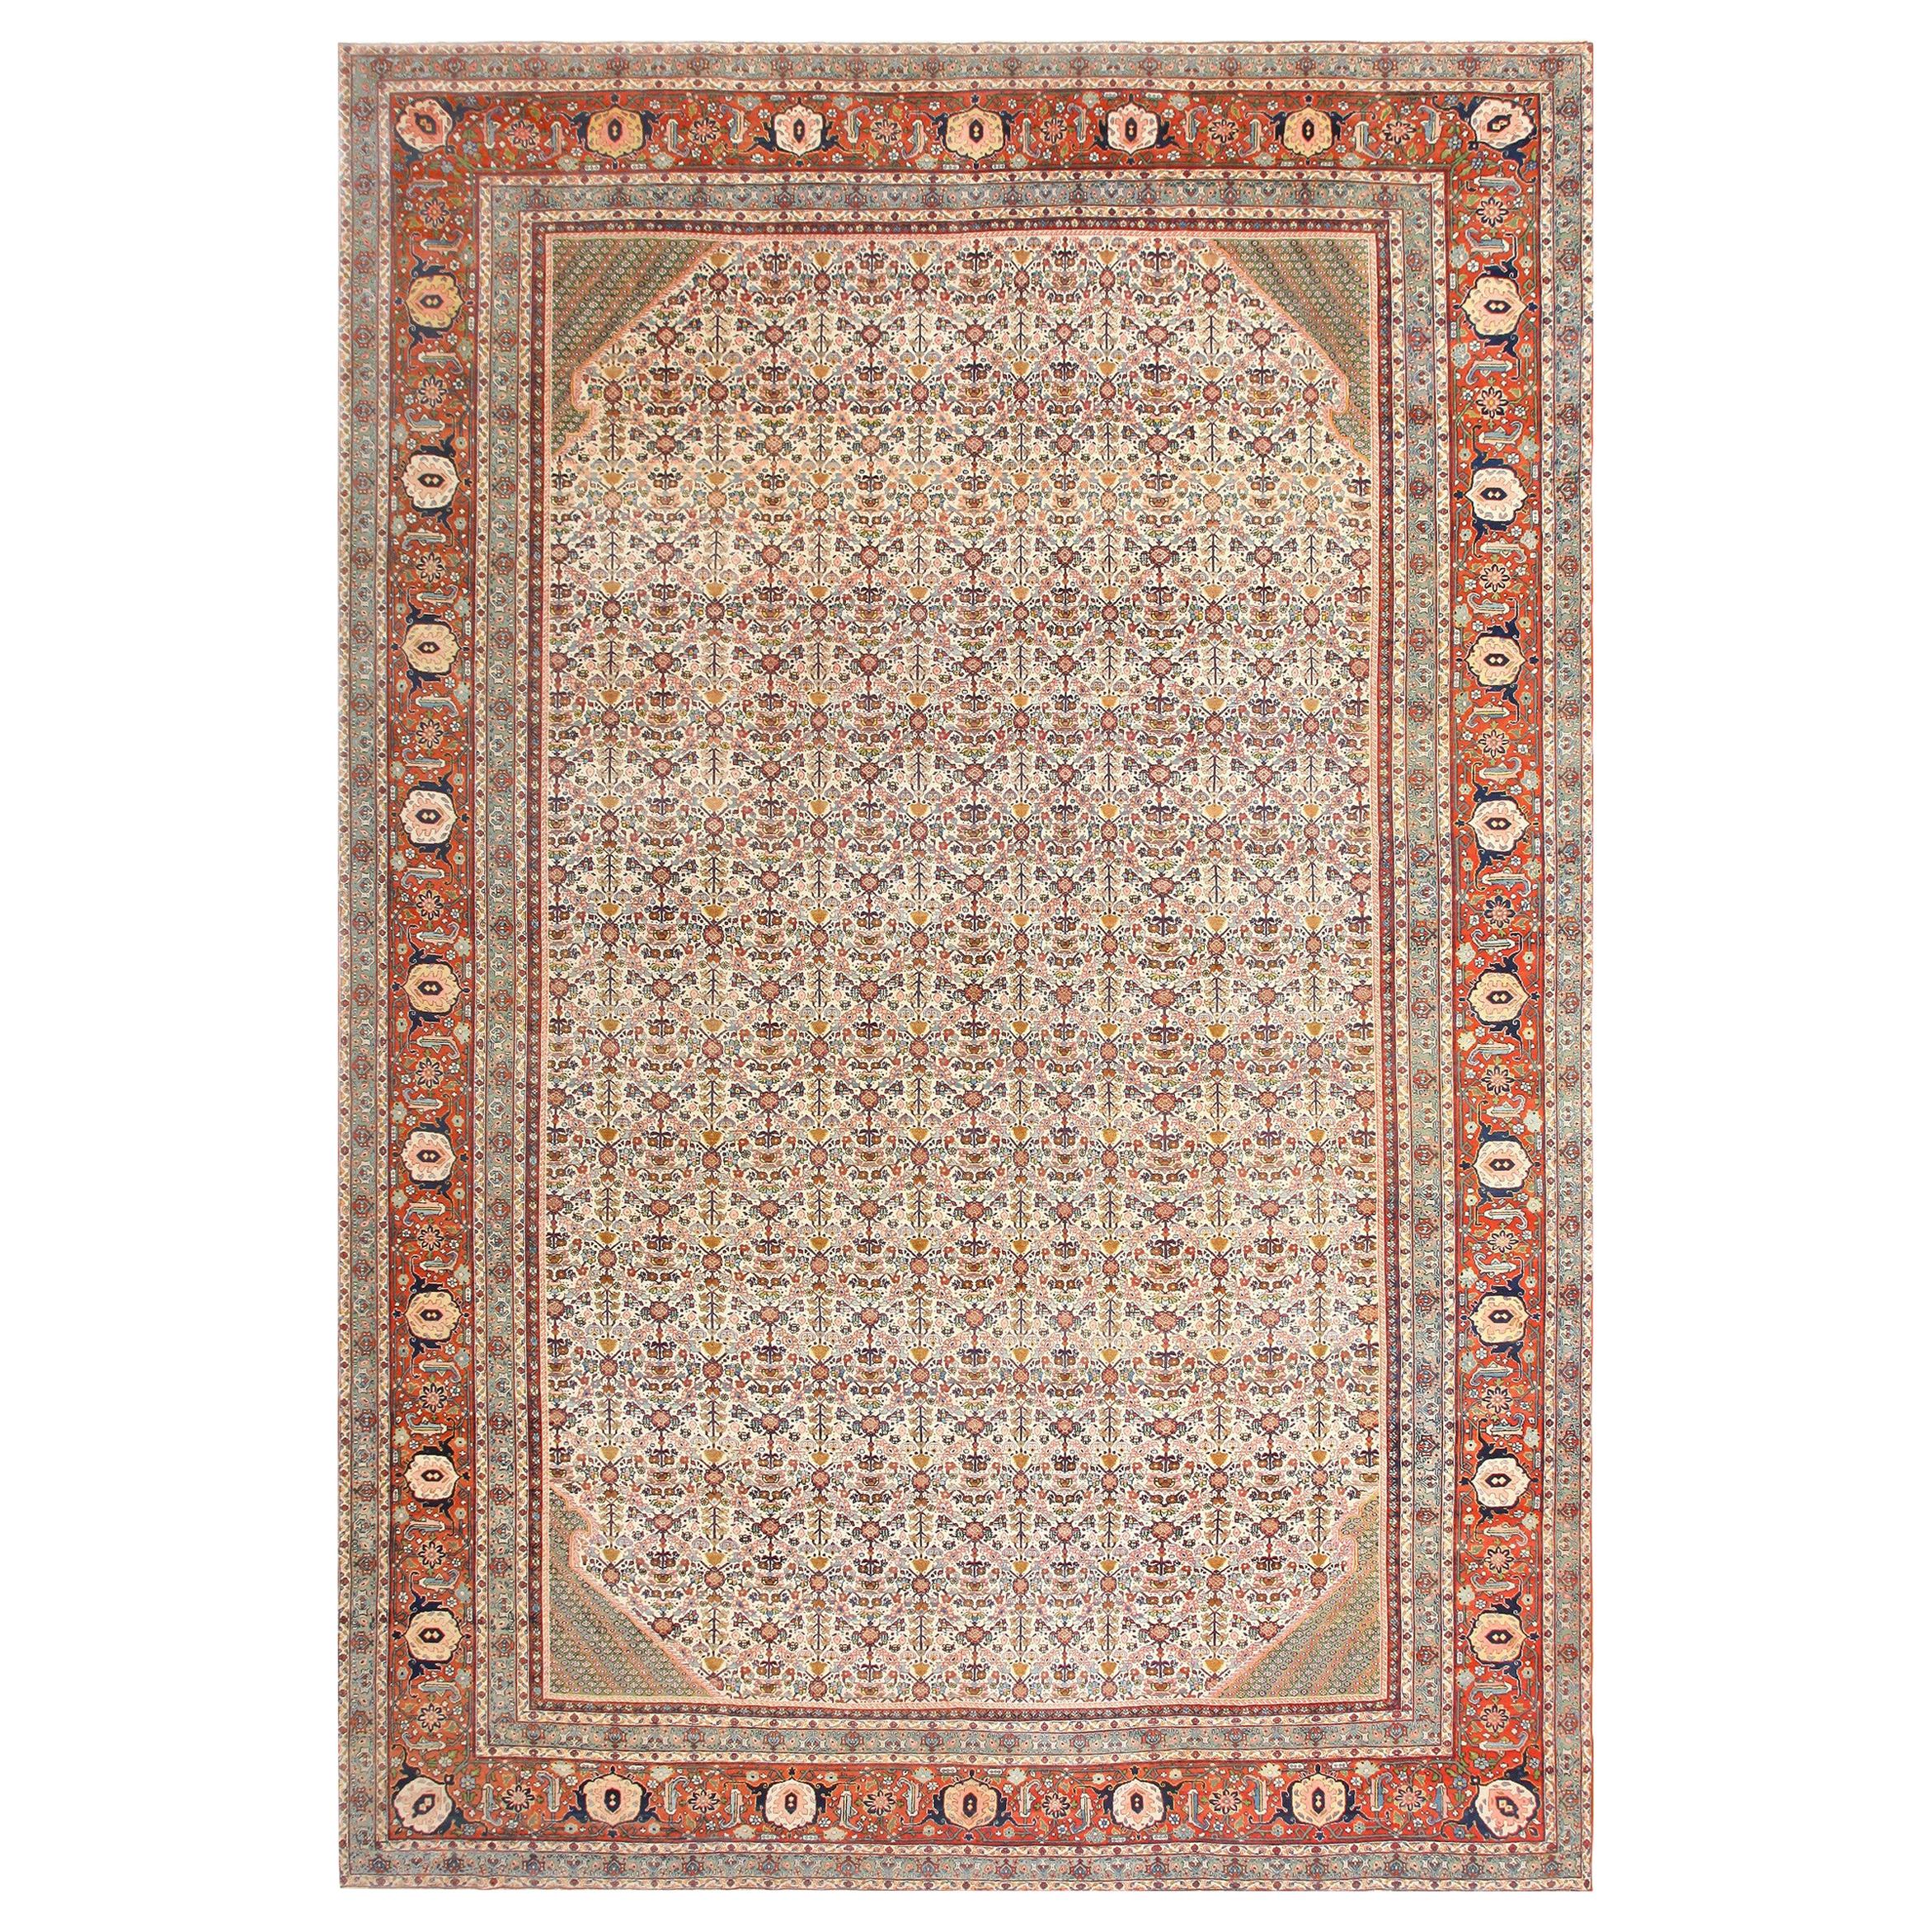 Großer antiker elfenbeinfarbener Haji Jalili Persischer Täbris-Teppich. Größe: 12' 10"" x 19' 2""" 